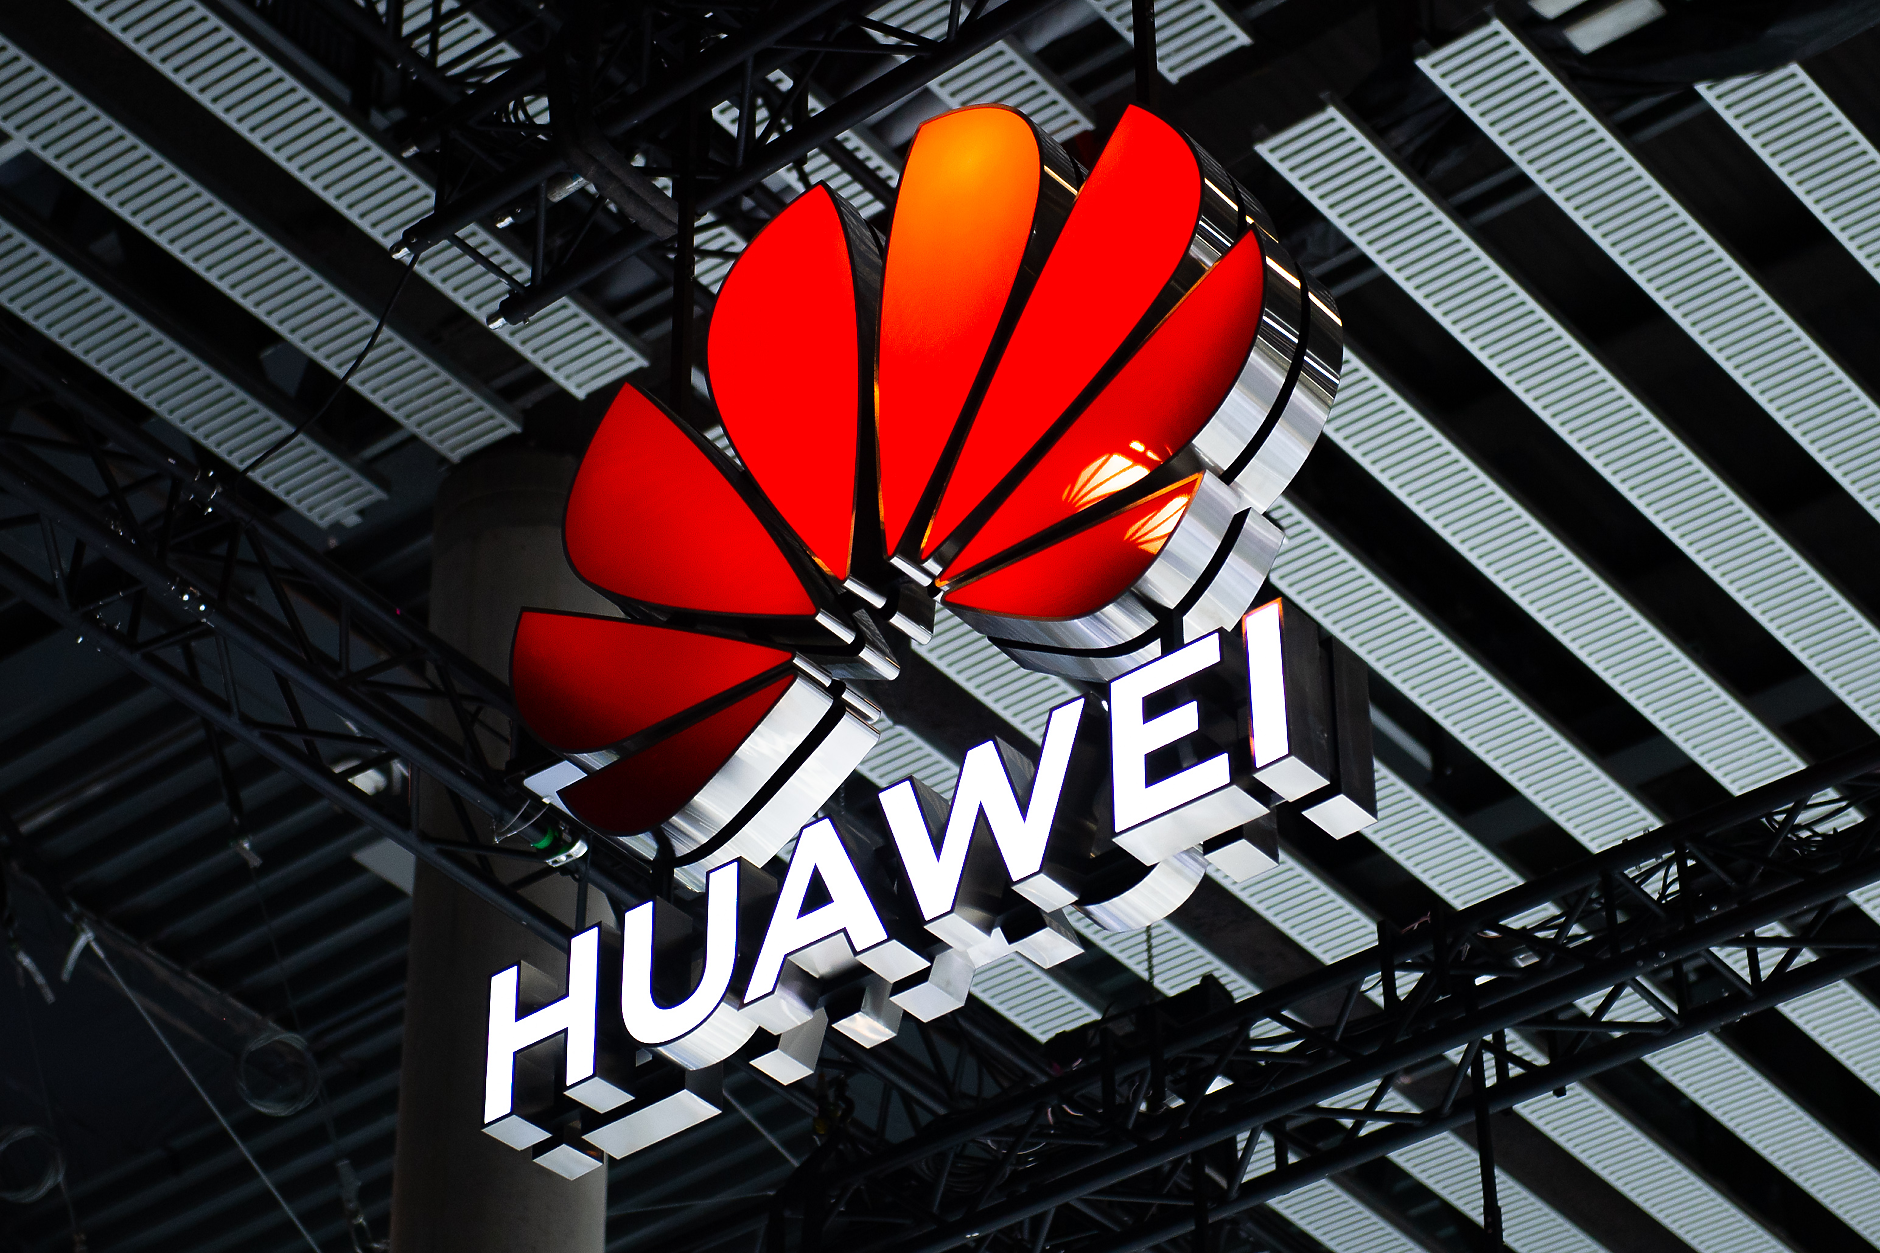 Мистериозен смартфон на Huawei вдъхна надежди на засегнатата от санкции китайска технологична индустрия